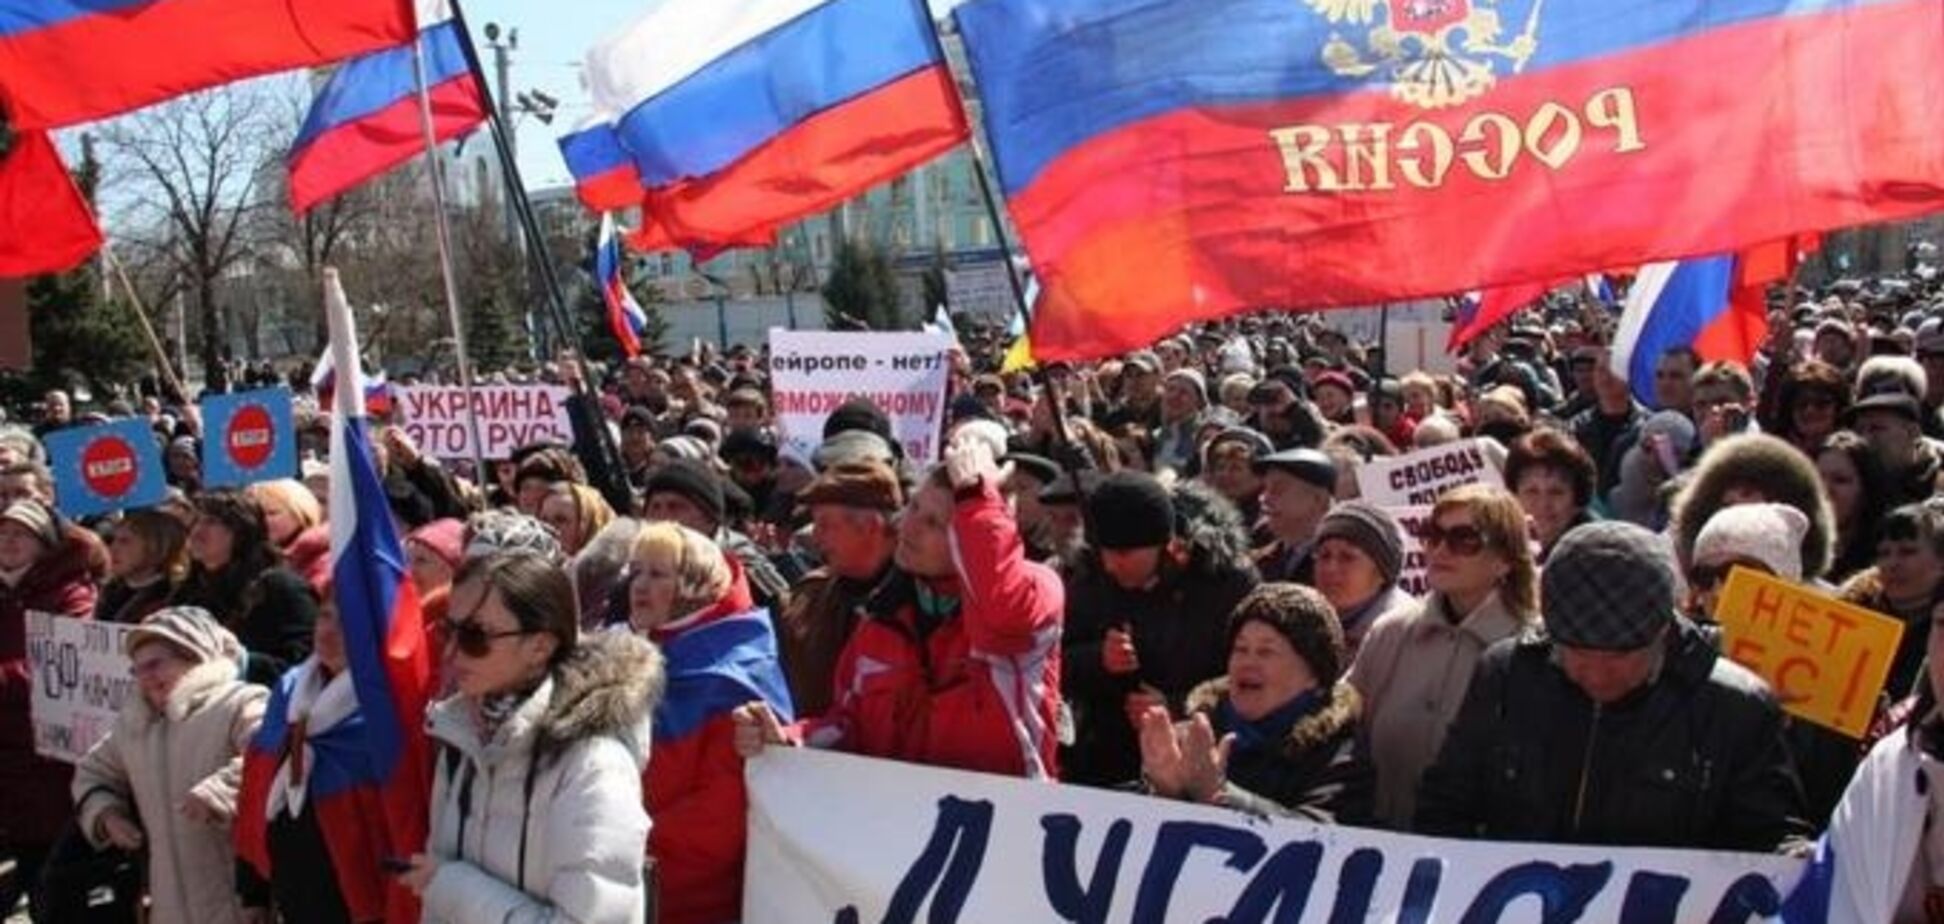 Многие терпеть не могут Киев, утверждая, что Луганск удобнее в тысячу раз